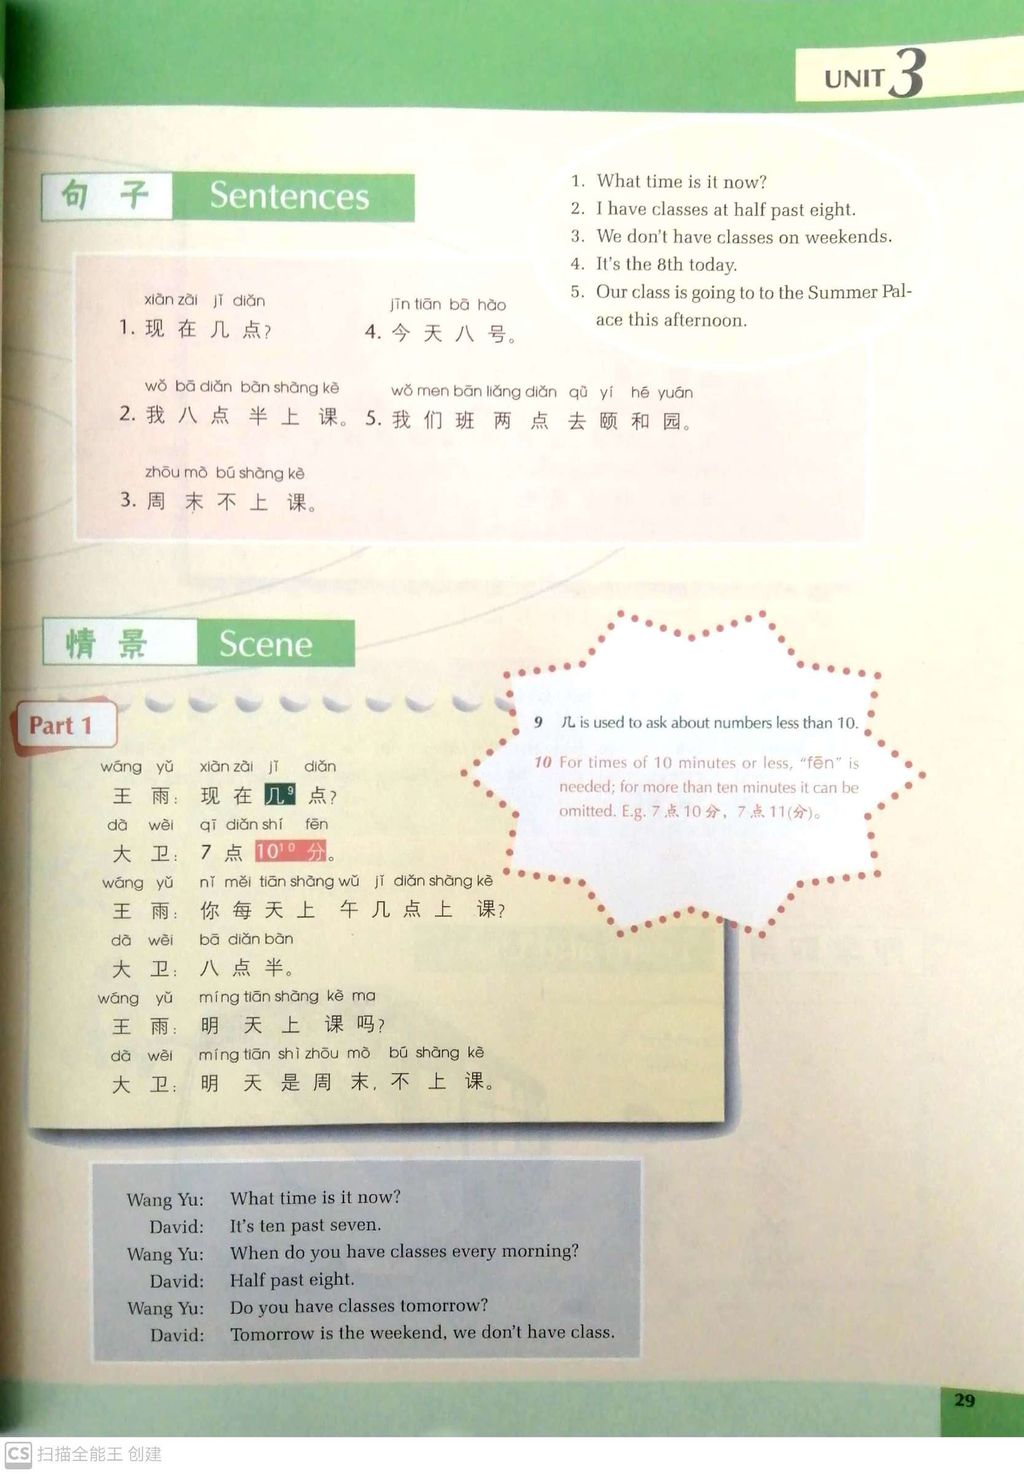 体验汉语——留学篇_内页1.jpg